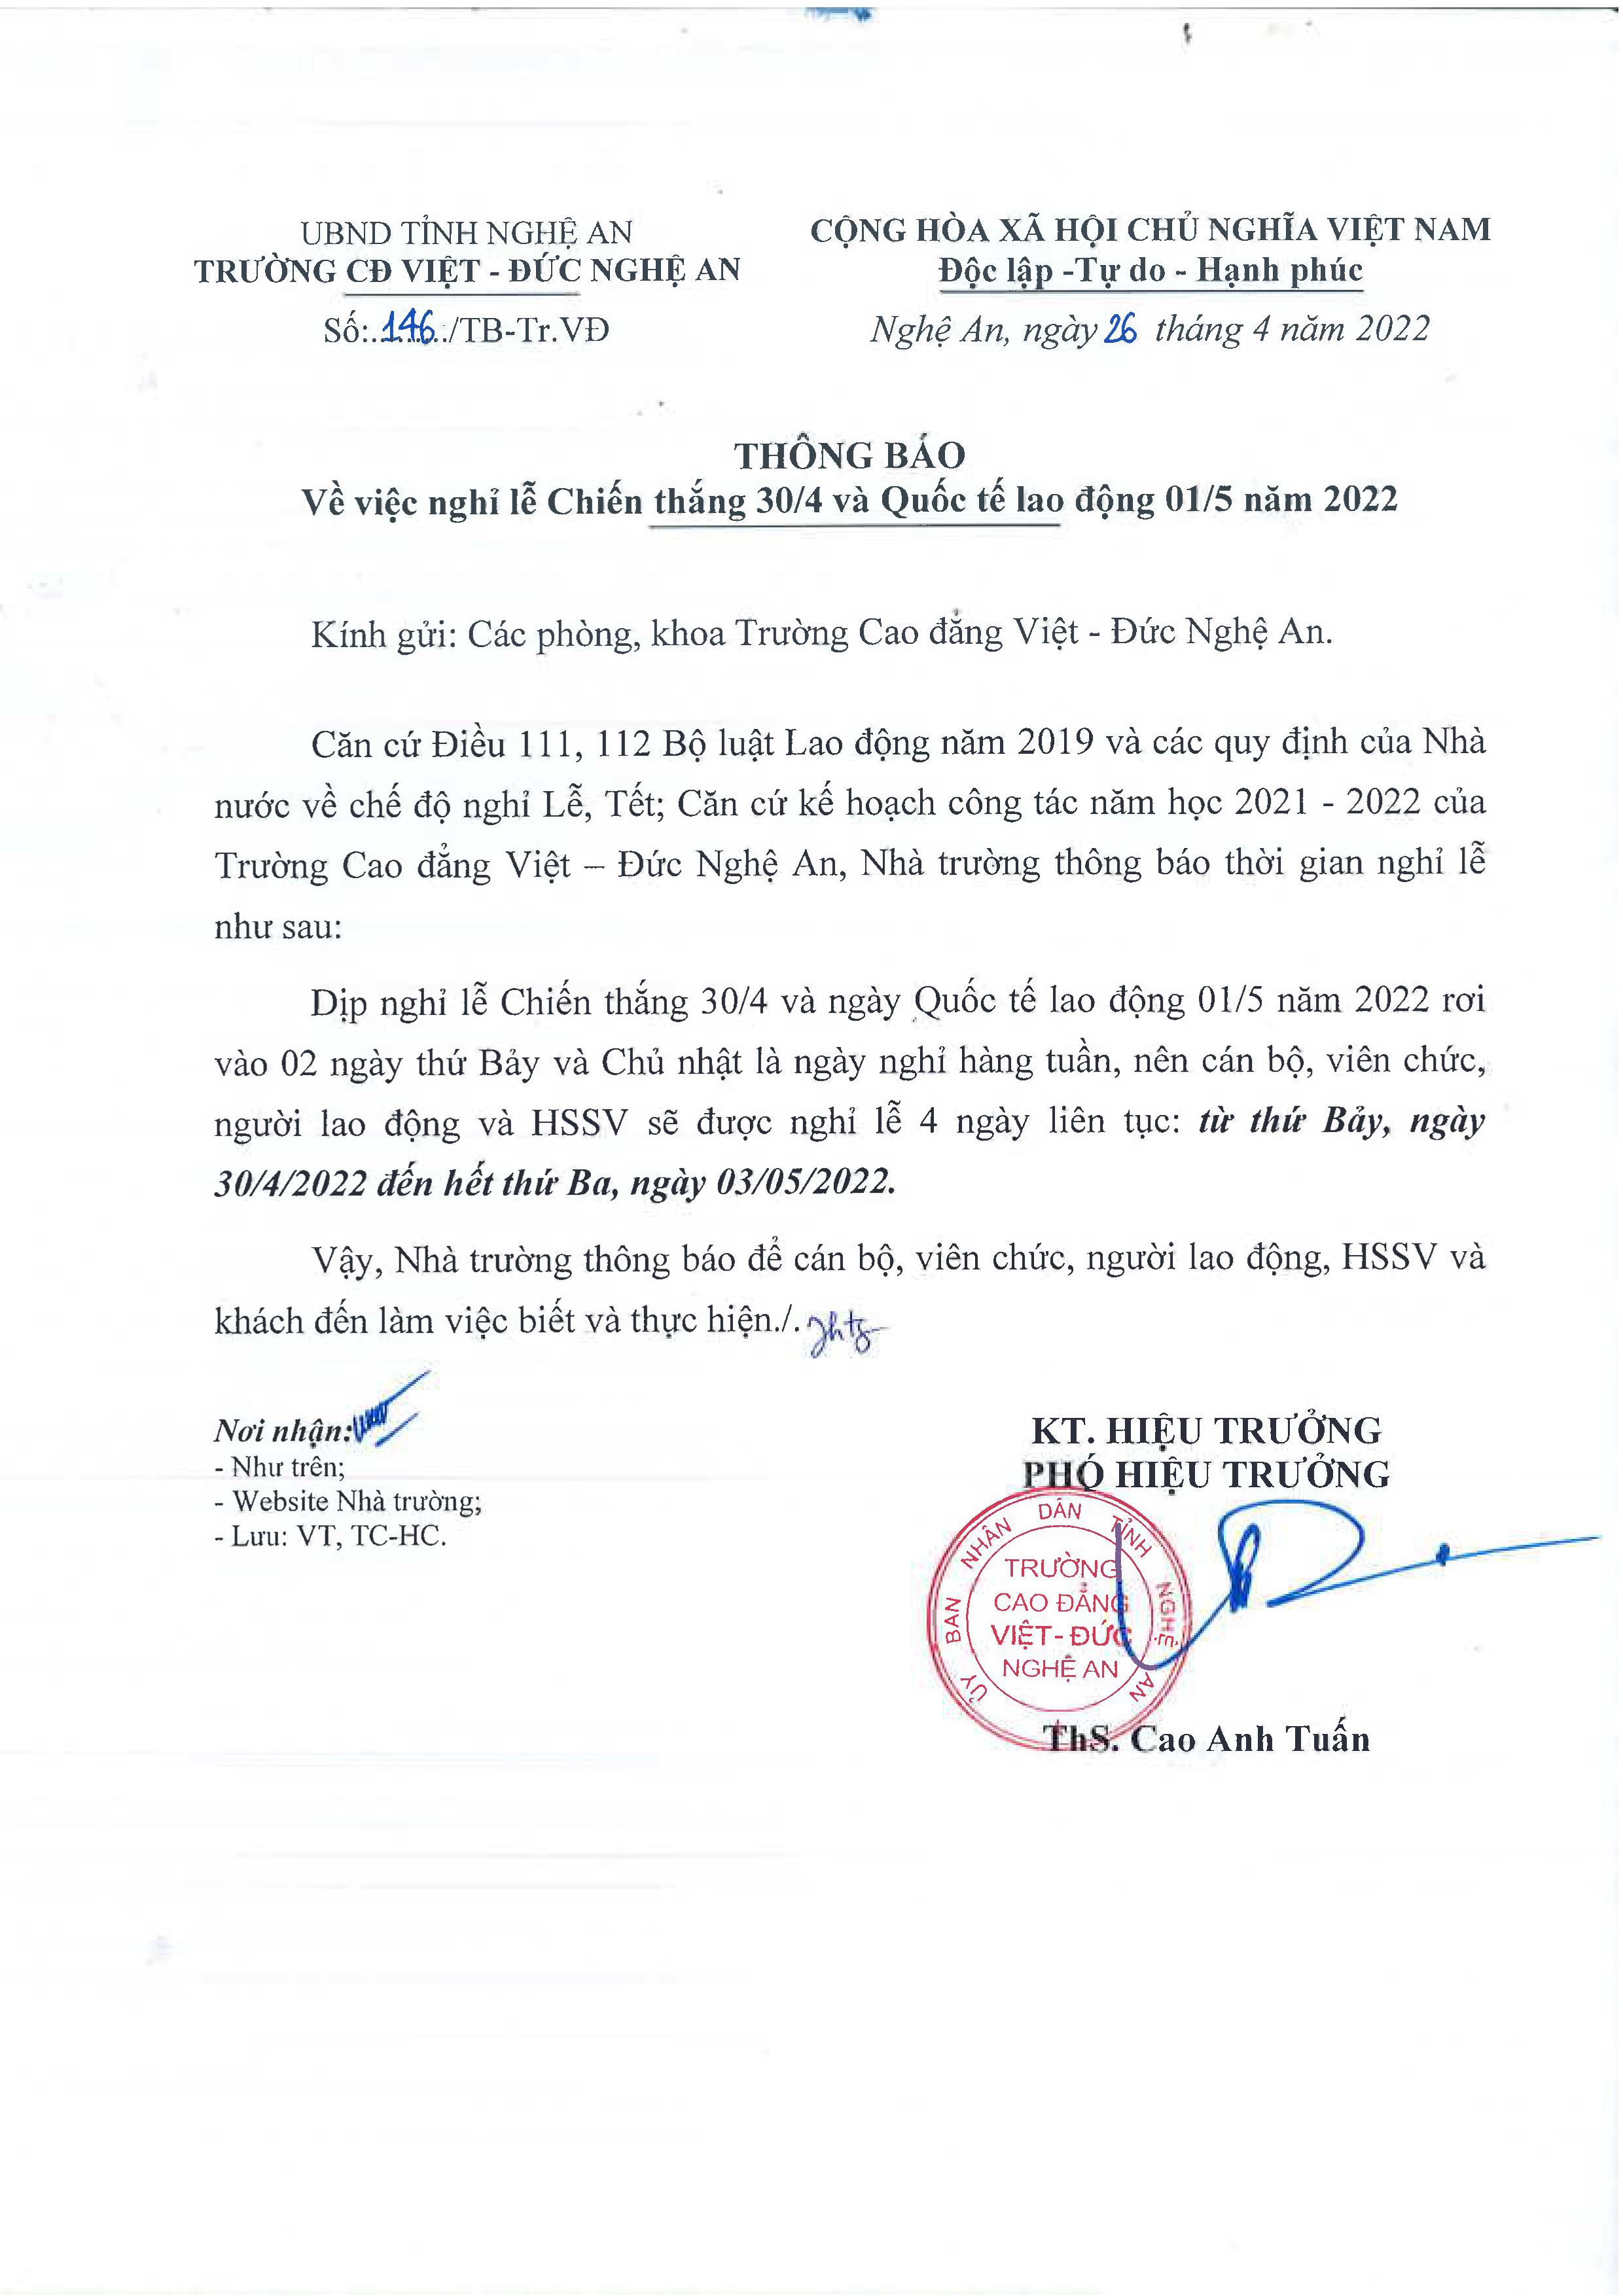 Thông báo số 146/TB-Tr.VĐ ngày 26/4/2022 của Trường Cao đẳng Việt - Đức Nghệ An về việc nghỉ Lễ Chiến thắng 30/4 và Quốc tế Lao động 01/5 năm 2022